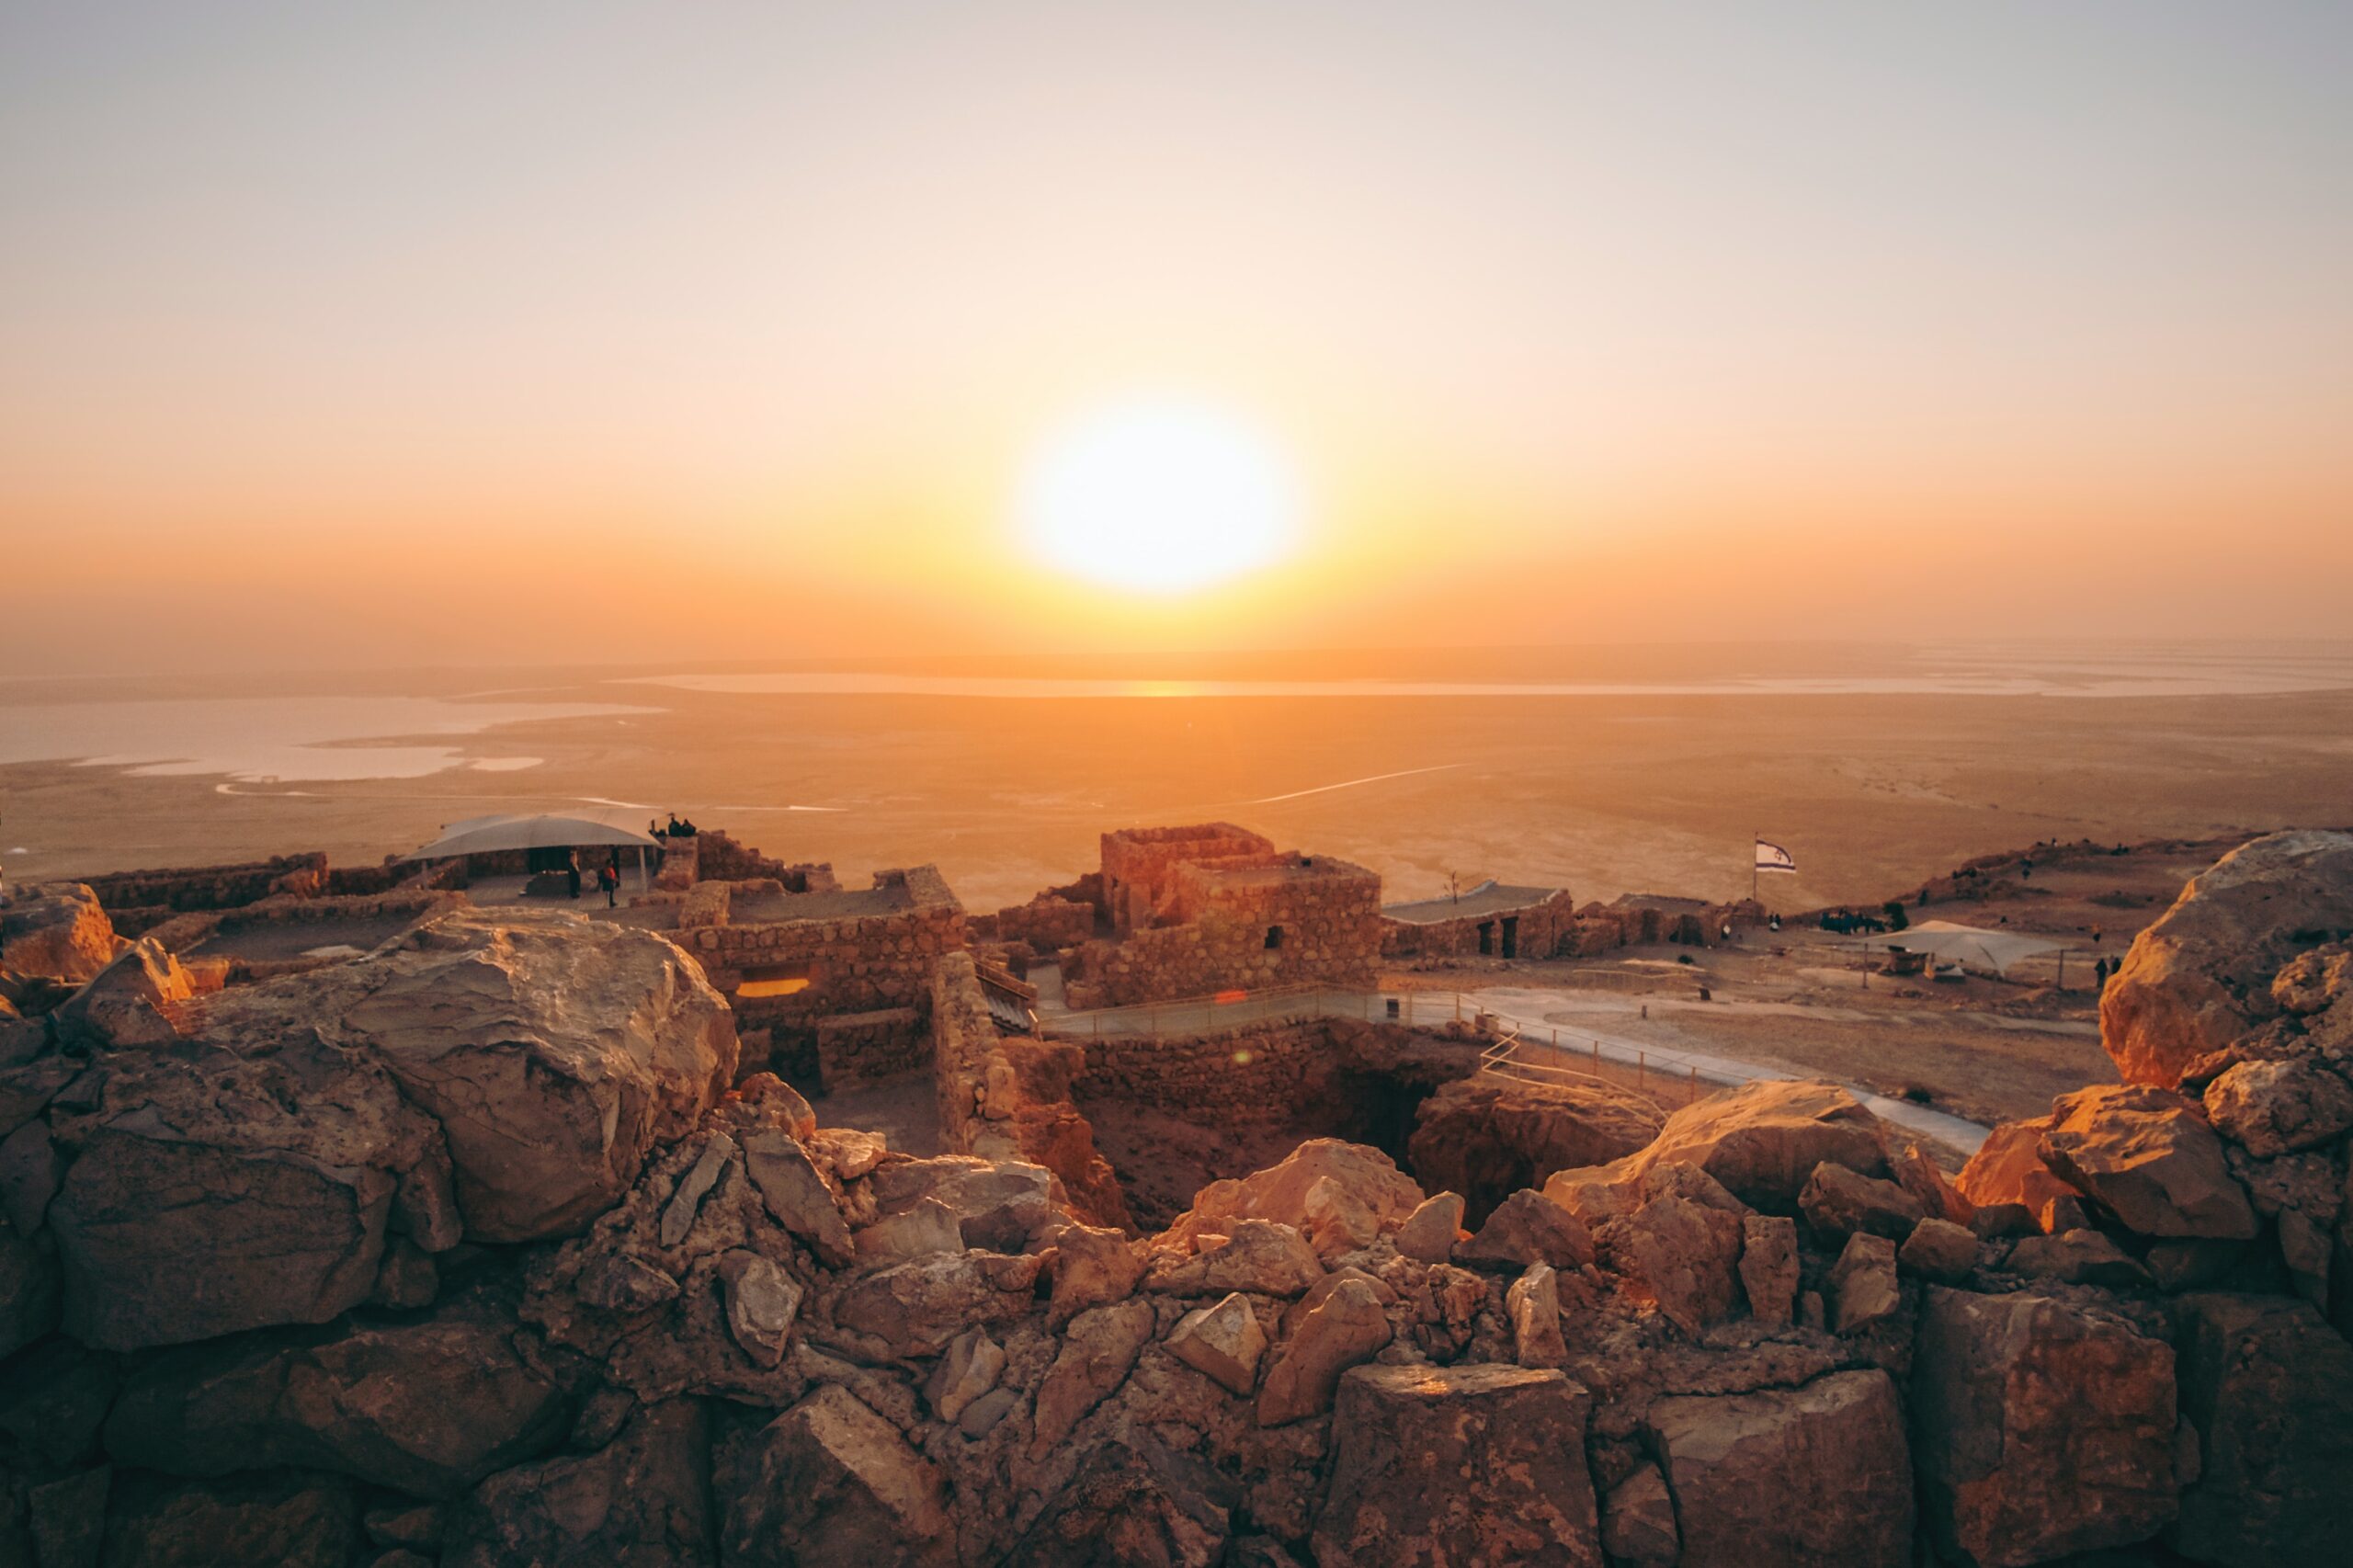 Vista do pôr do sol no parque Masada, Israel, com muros e monumentos feitos de pedras. Representa seguro viagem Israel.